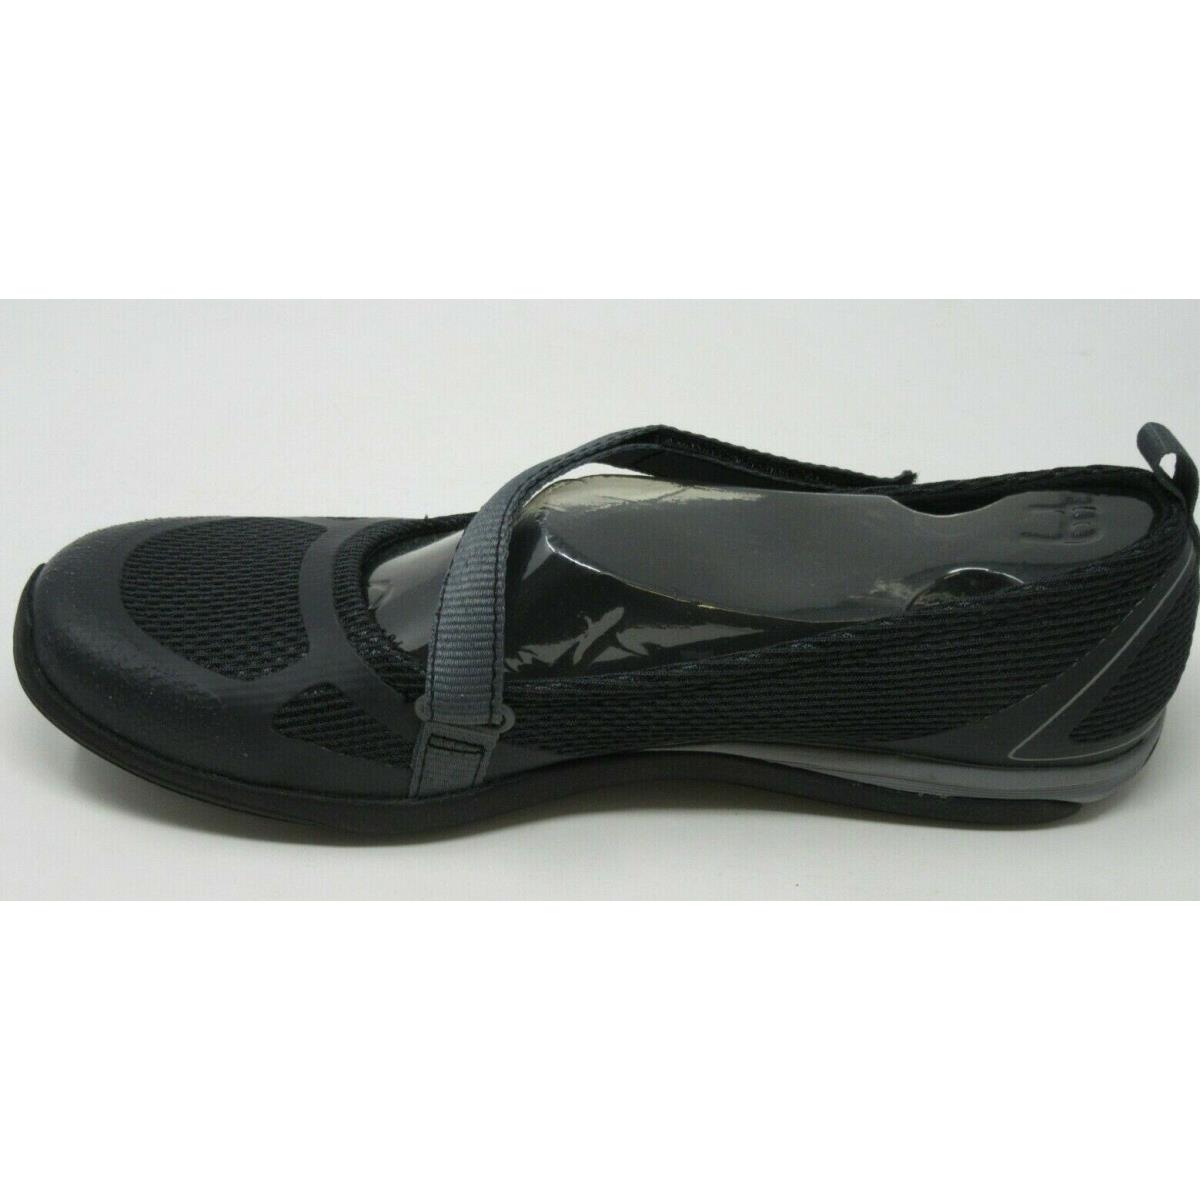 Merrell Women`s Ceylon Sport MJ Black Mary Jane Slip-on Shoes Size 6/M J55090